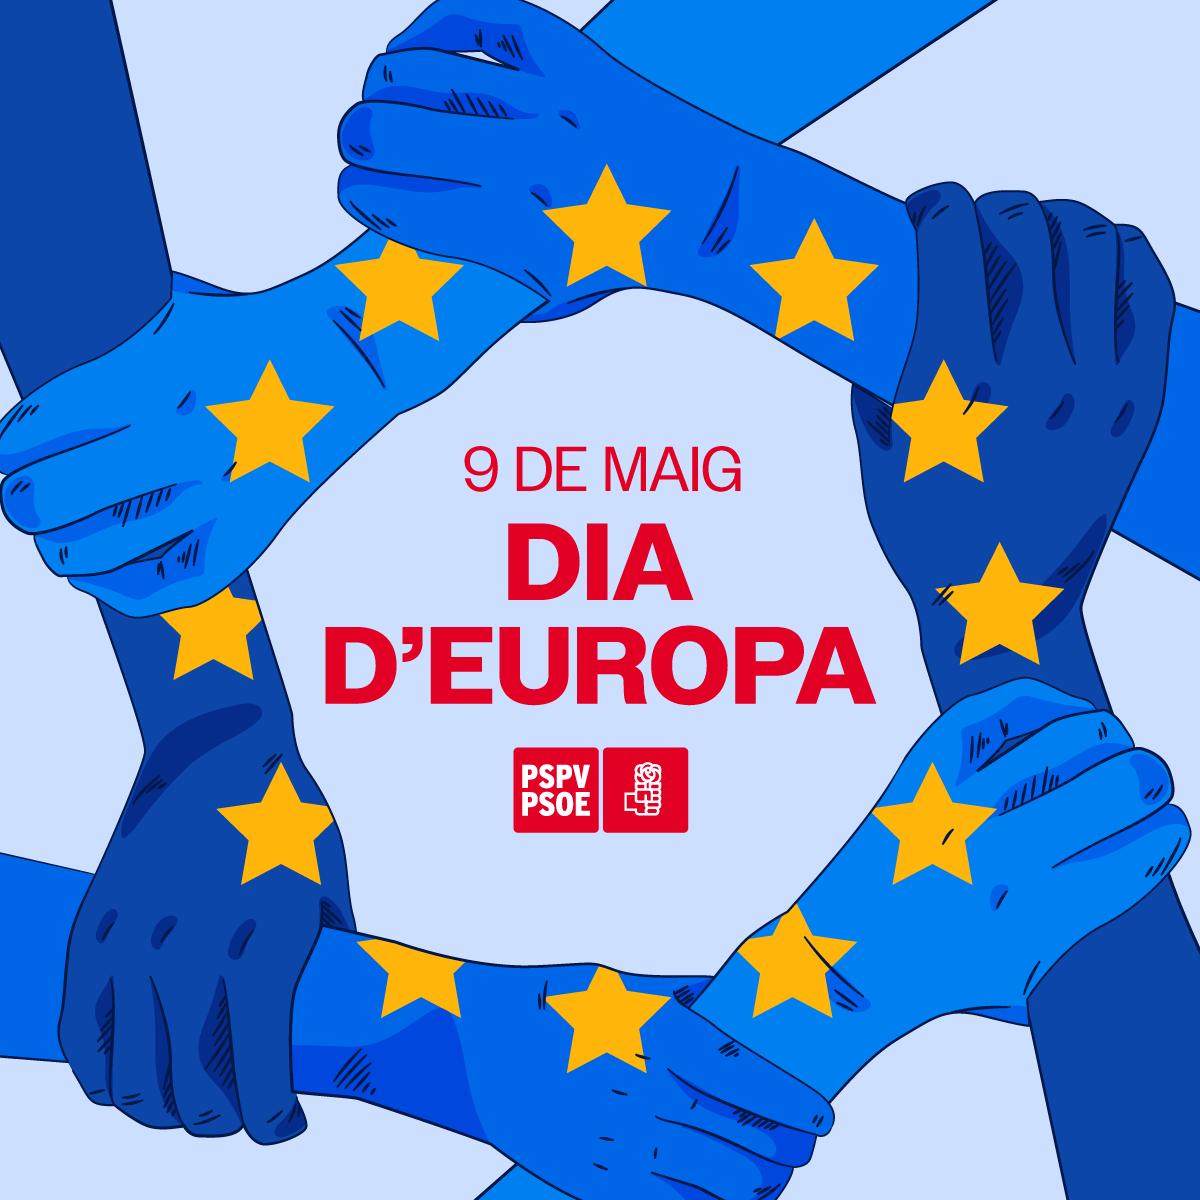 🇪🇺 Aquest 9 de maig commemorem el dia d'Europa, una jornada en la qual reivindiquem a la UE com una eina d'unió i col·laboració per a continuar avançant cap al progrés. ✊🏻 Sempre units per la democràcia, els drets, la igualtat i la pau. 🤝🏻 Hui tots units per Europa.